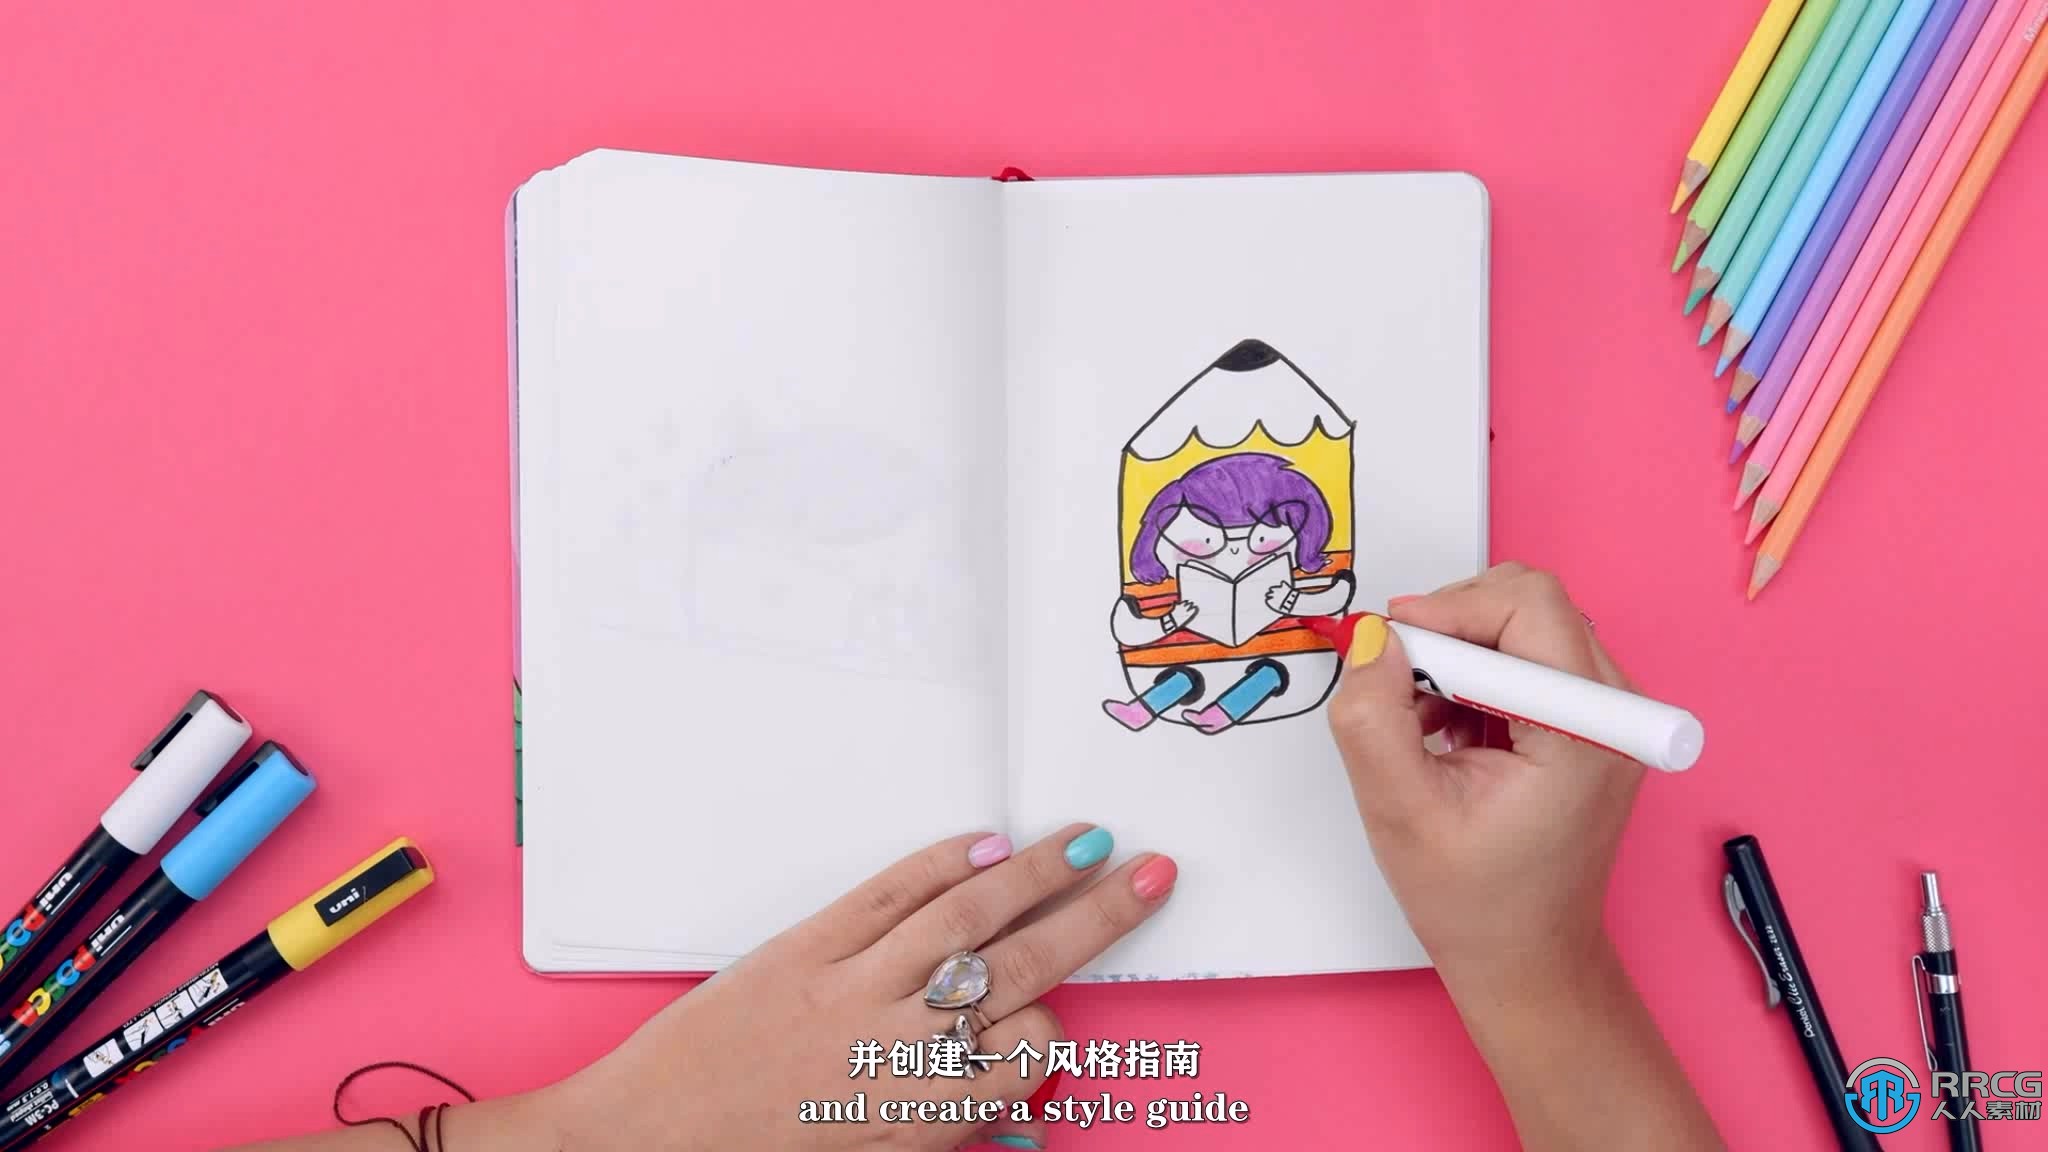 【中文字幕】Illustrator插画角色品牌化视觉识别技术视频教程